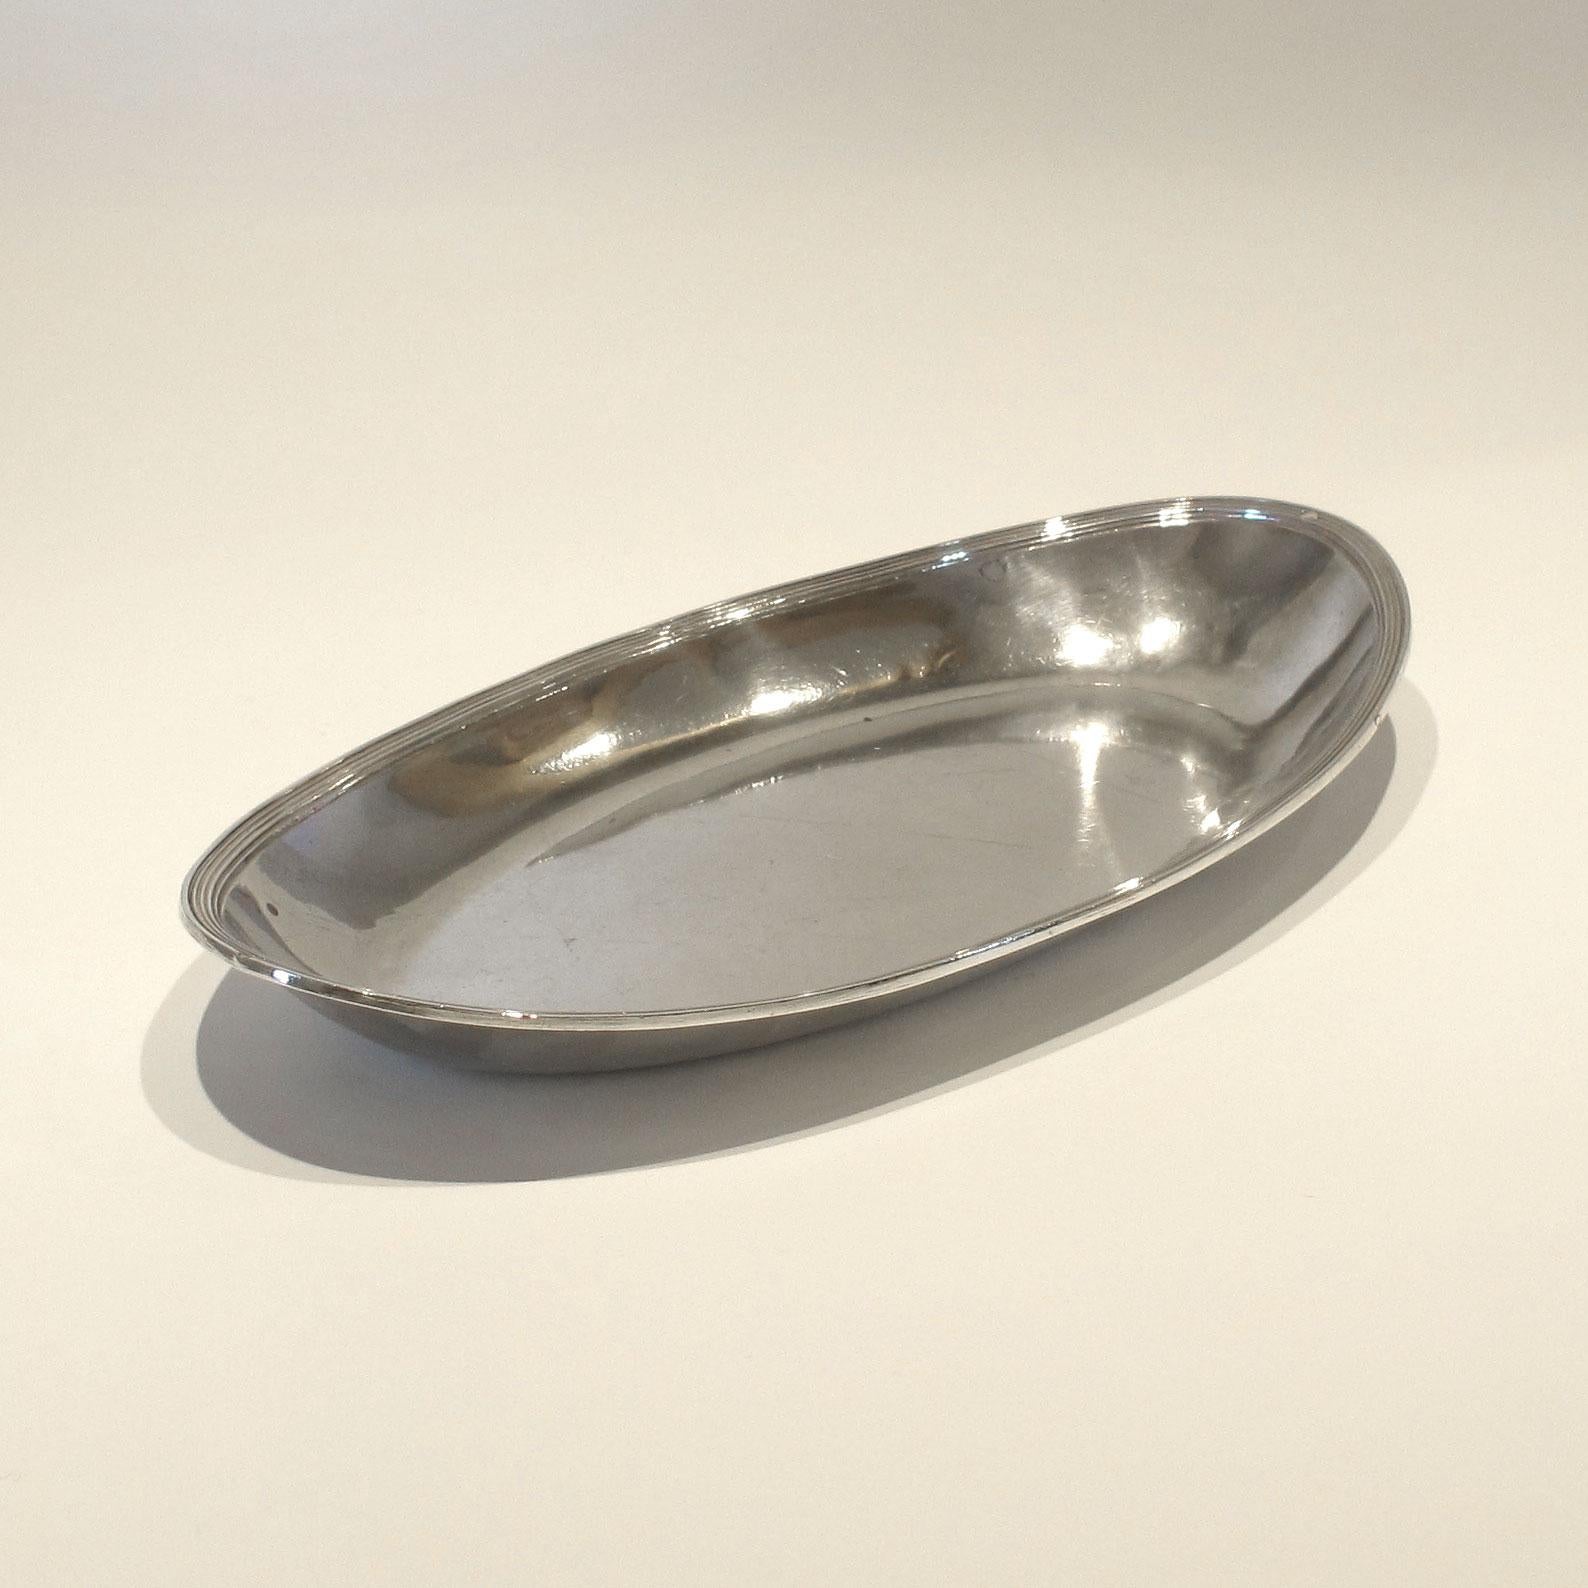 Plat ou plateau ovale en argent continental - parfait pour servir des boissons ou un plateau de coiffeuse.